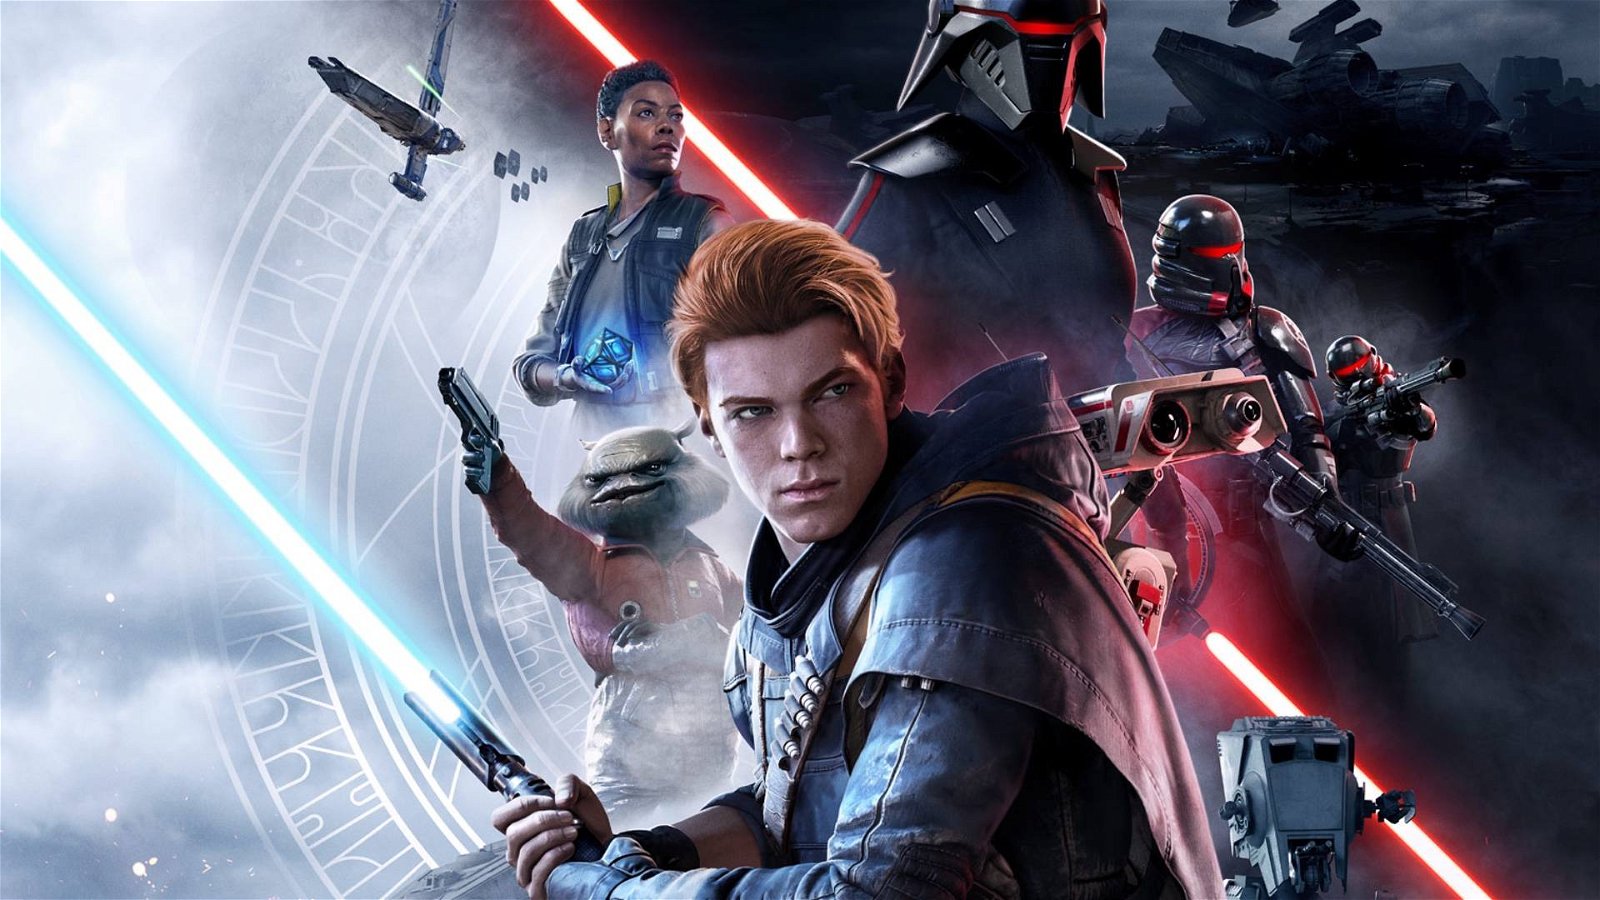 Immagine di Star Wars Jedi Fallen Order ha fatto registrare vendite straordinarie al lancio secondo un insider